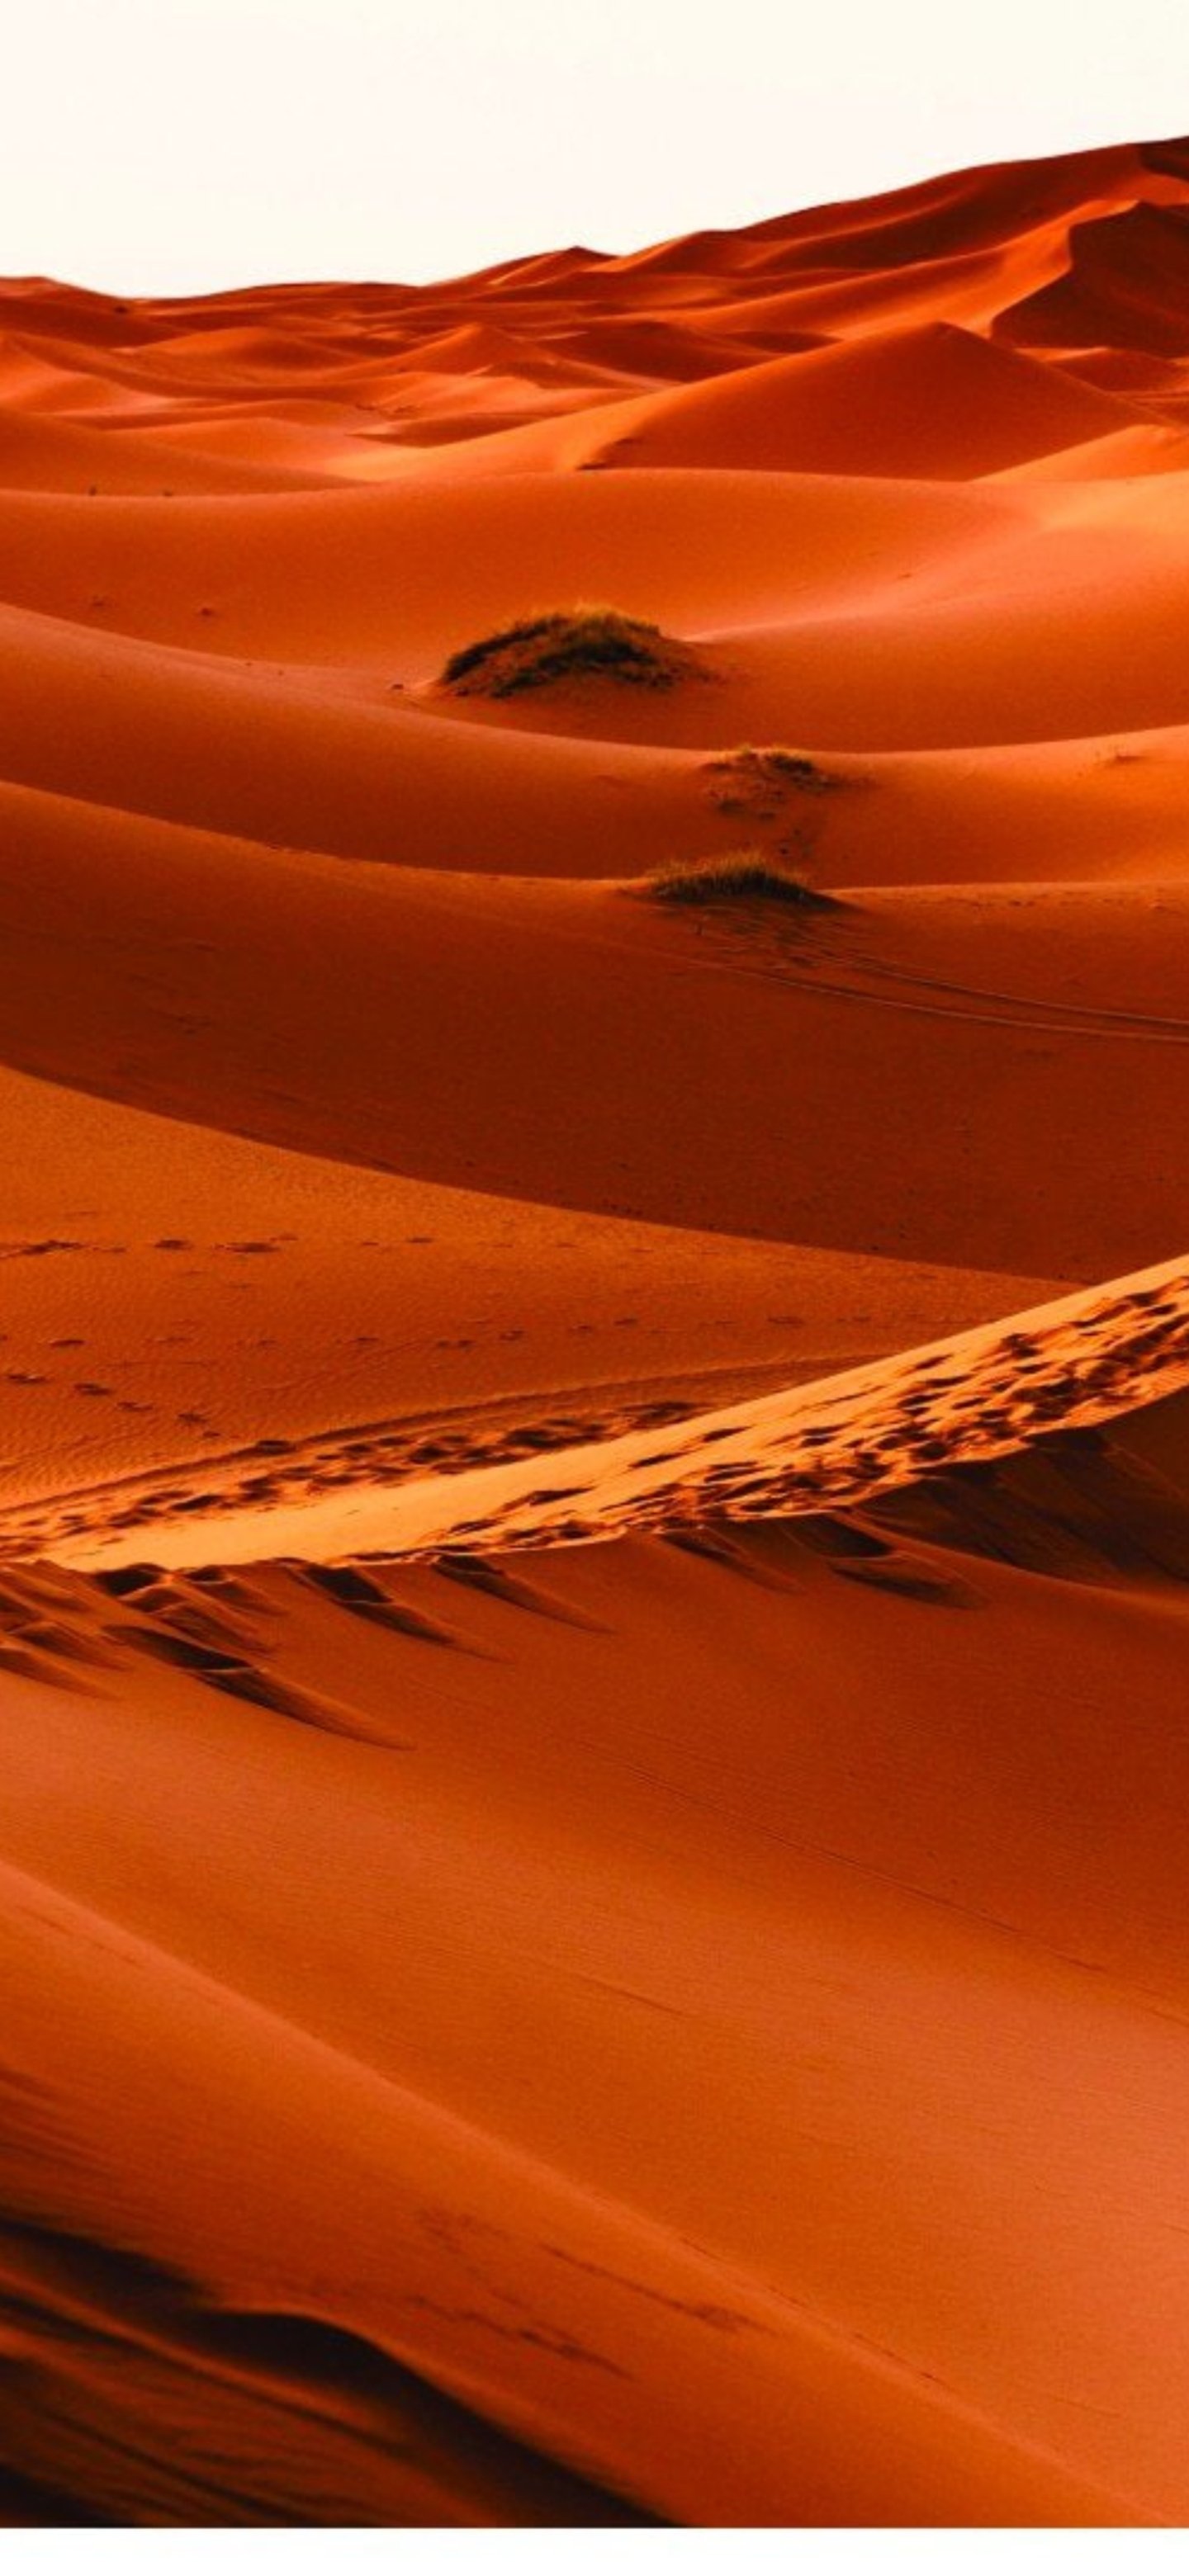 Fondos de pantalla de dunas rojizo